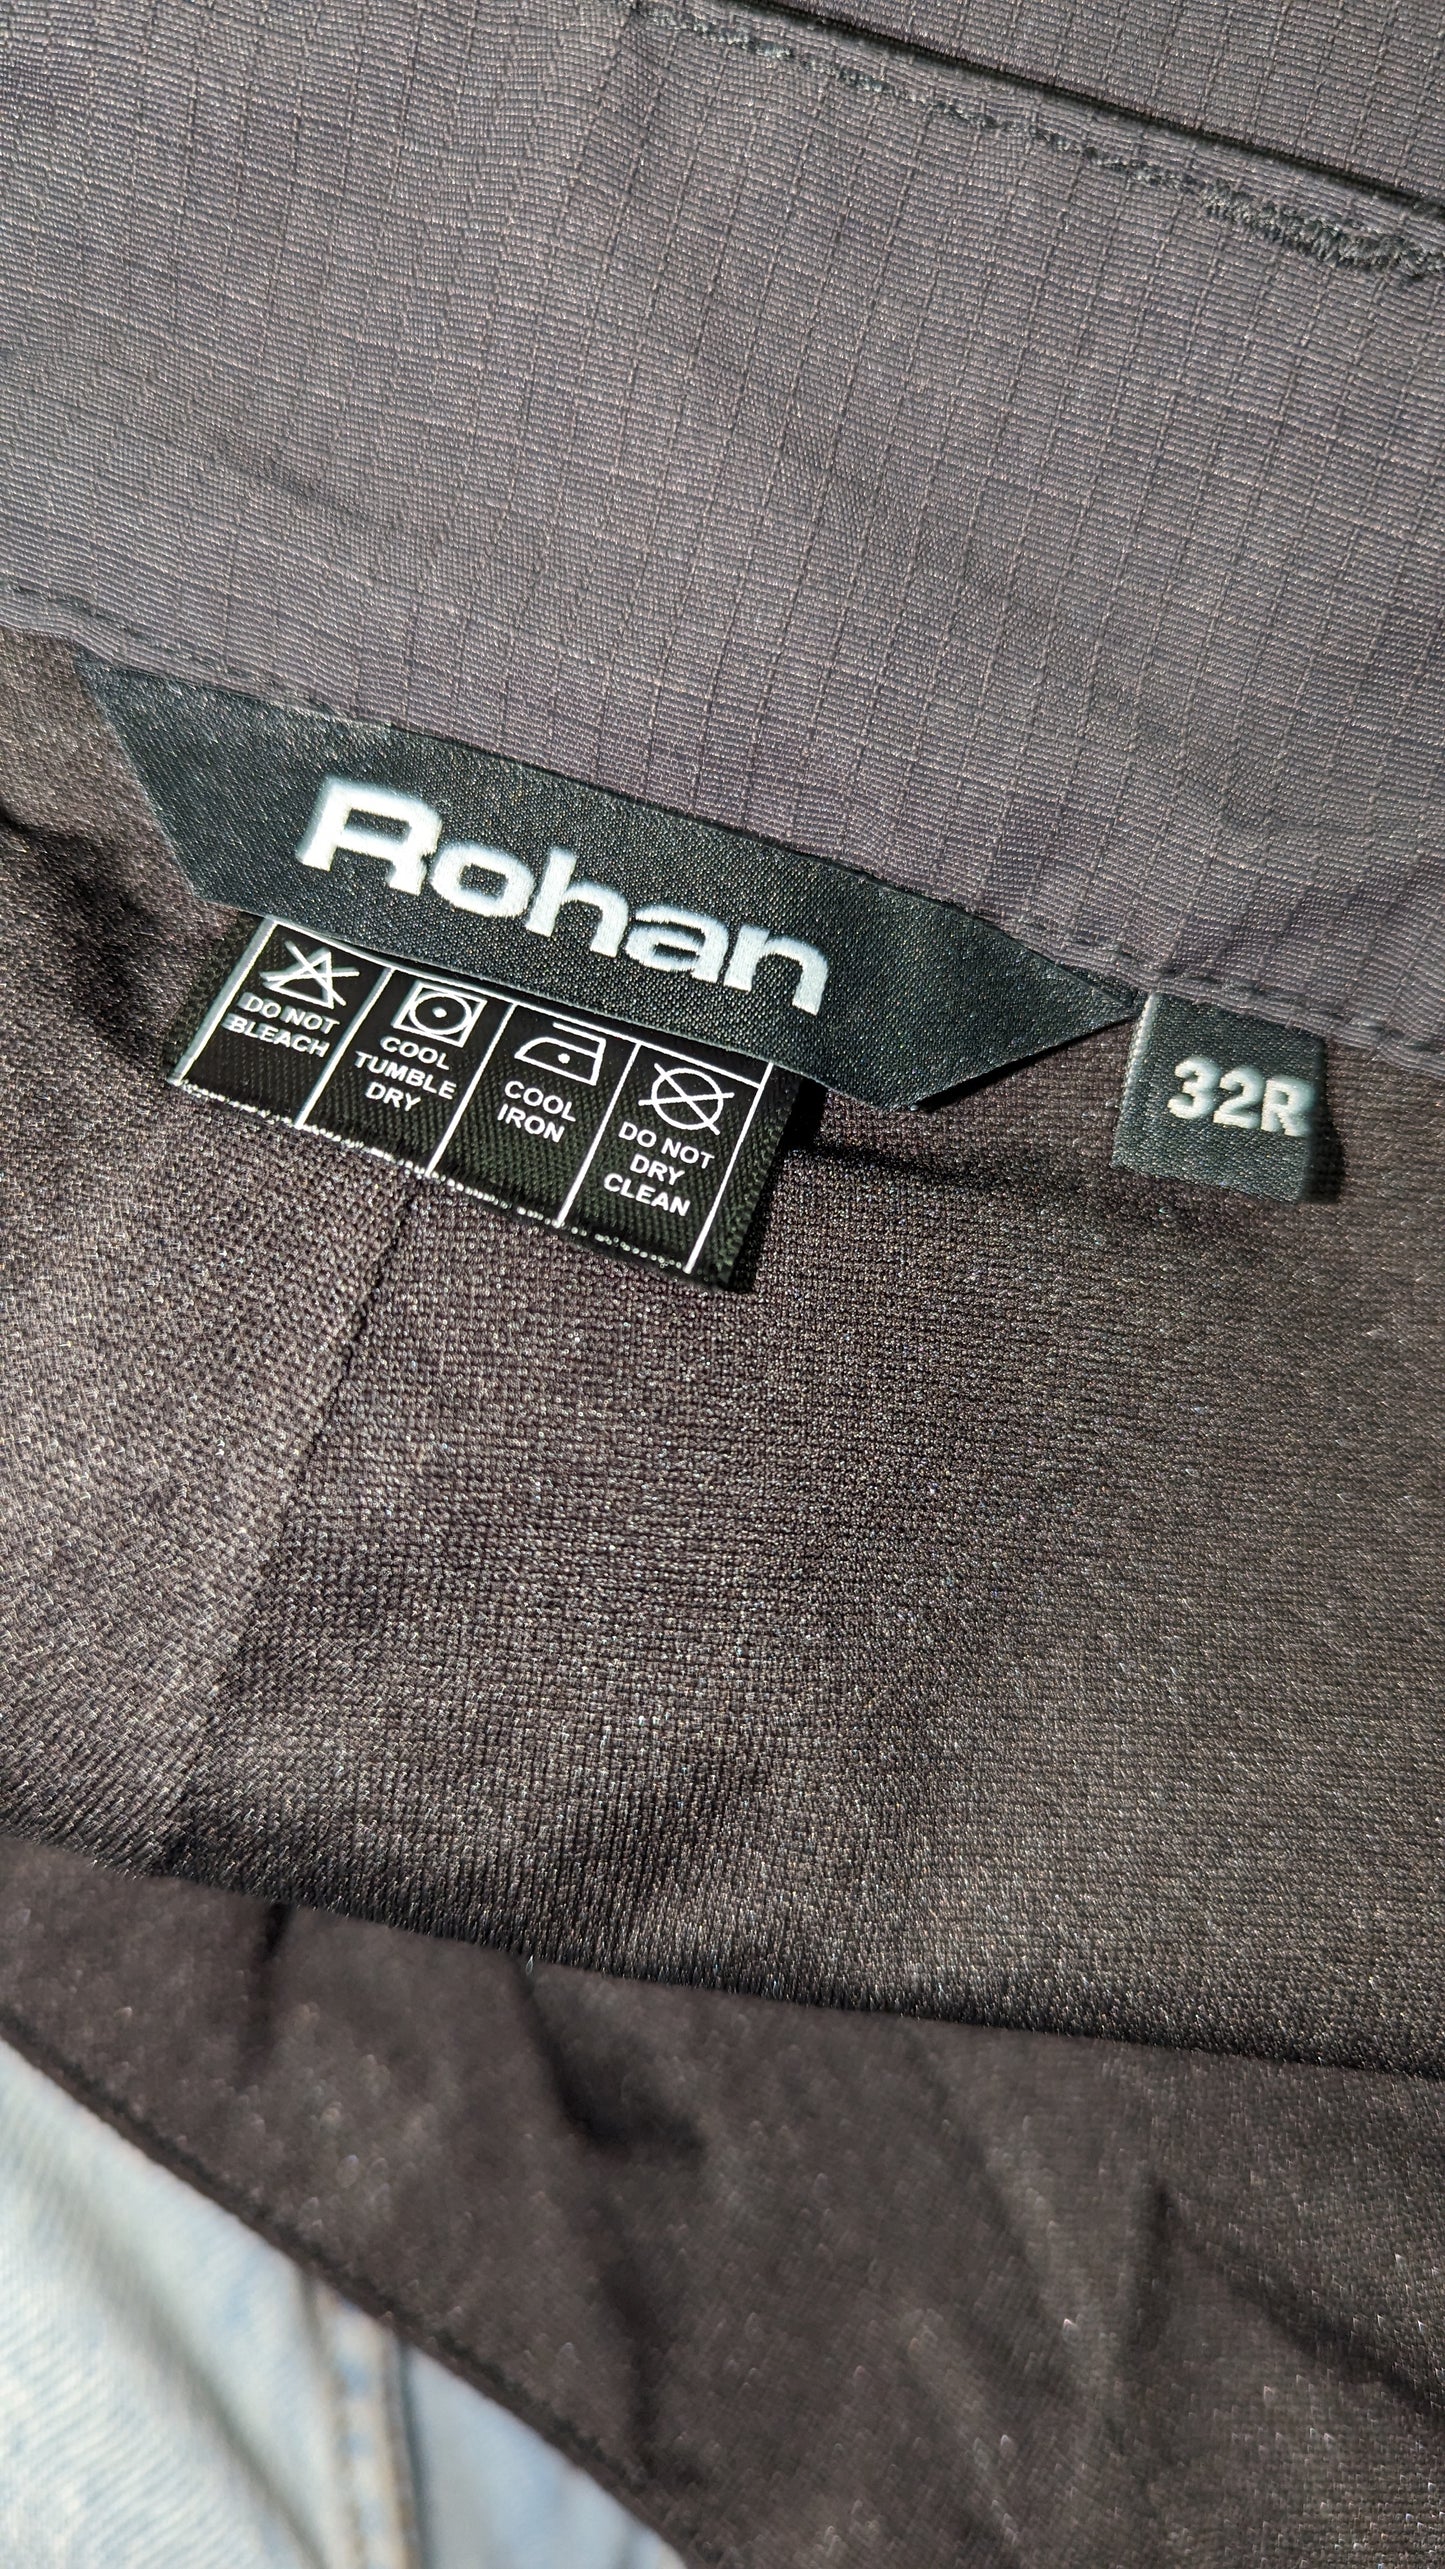 Men's Rohan Walking Trousers - Size 32R